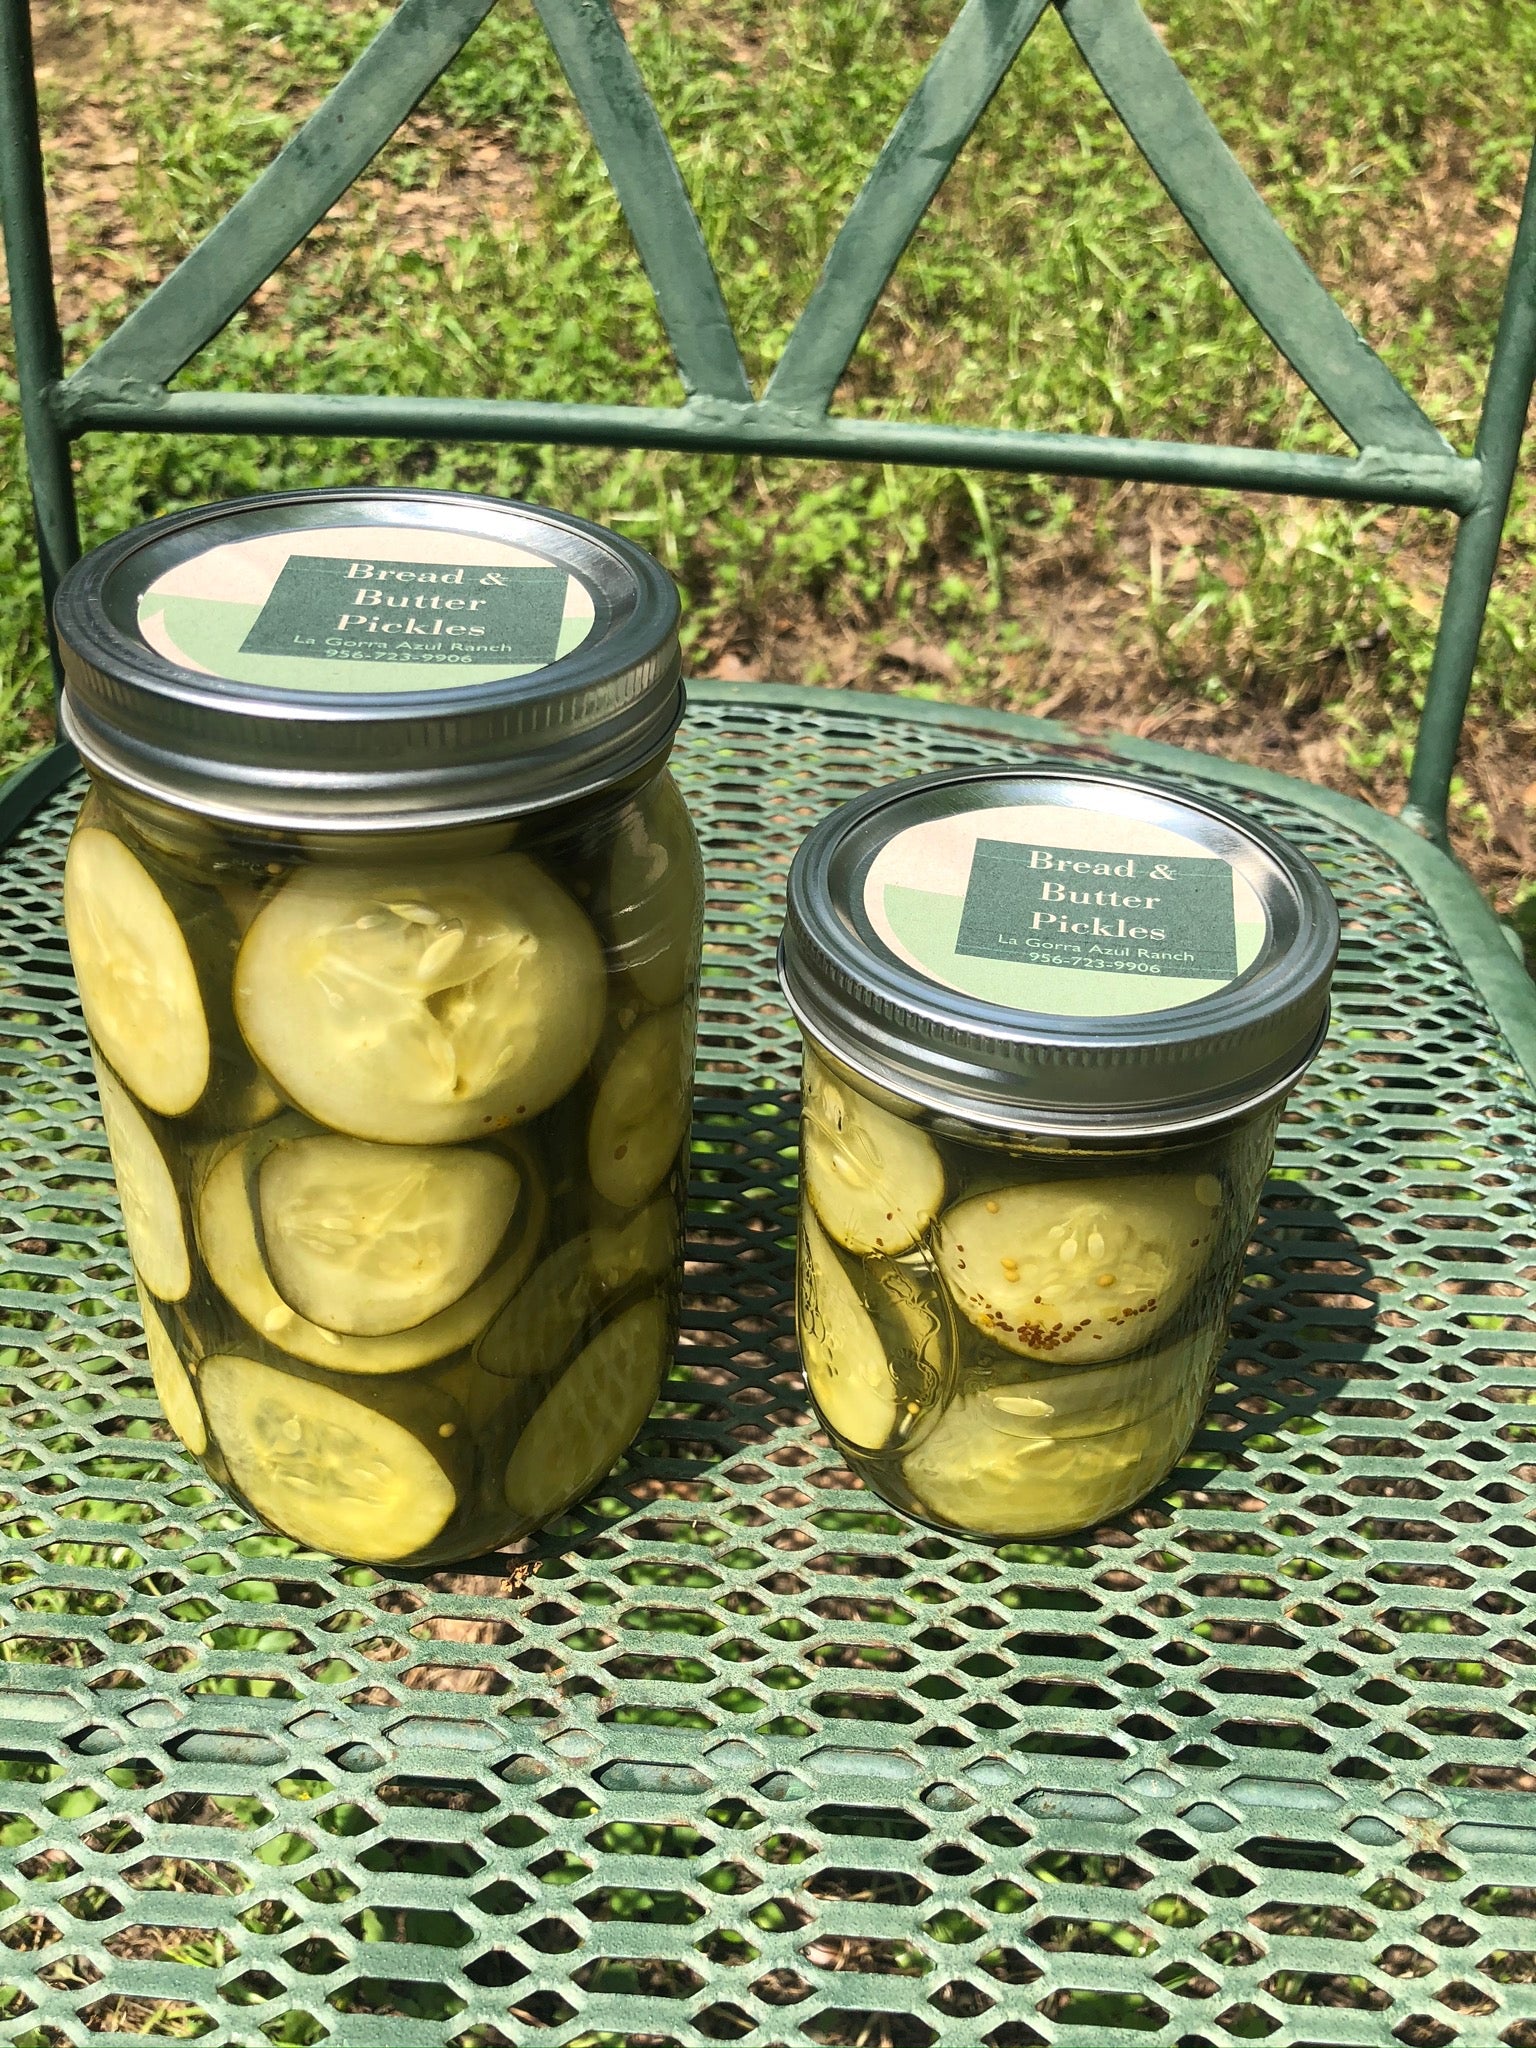 Bread & Butter Pickles - La Gorra Azul Ranch